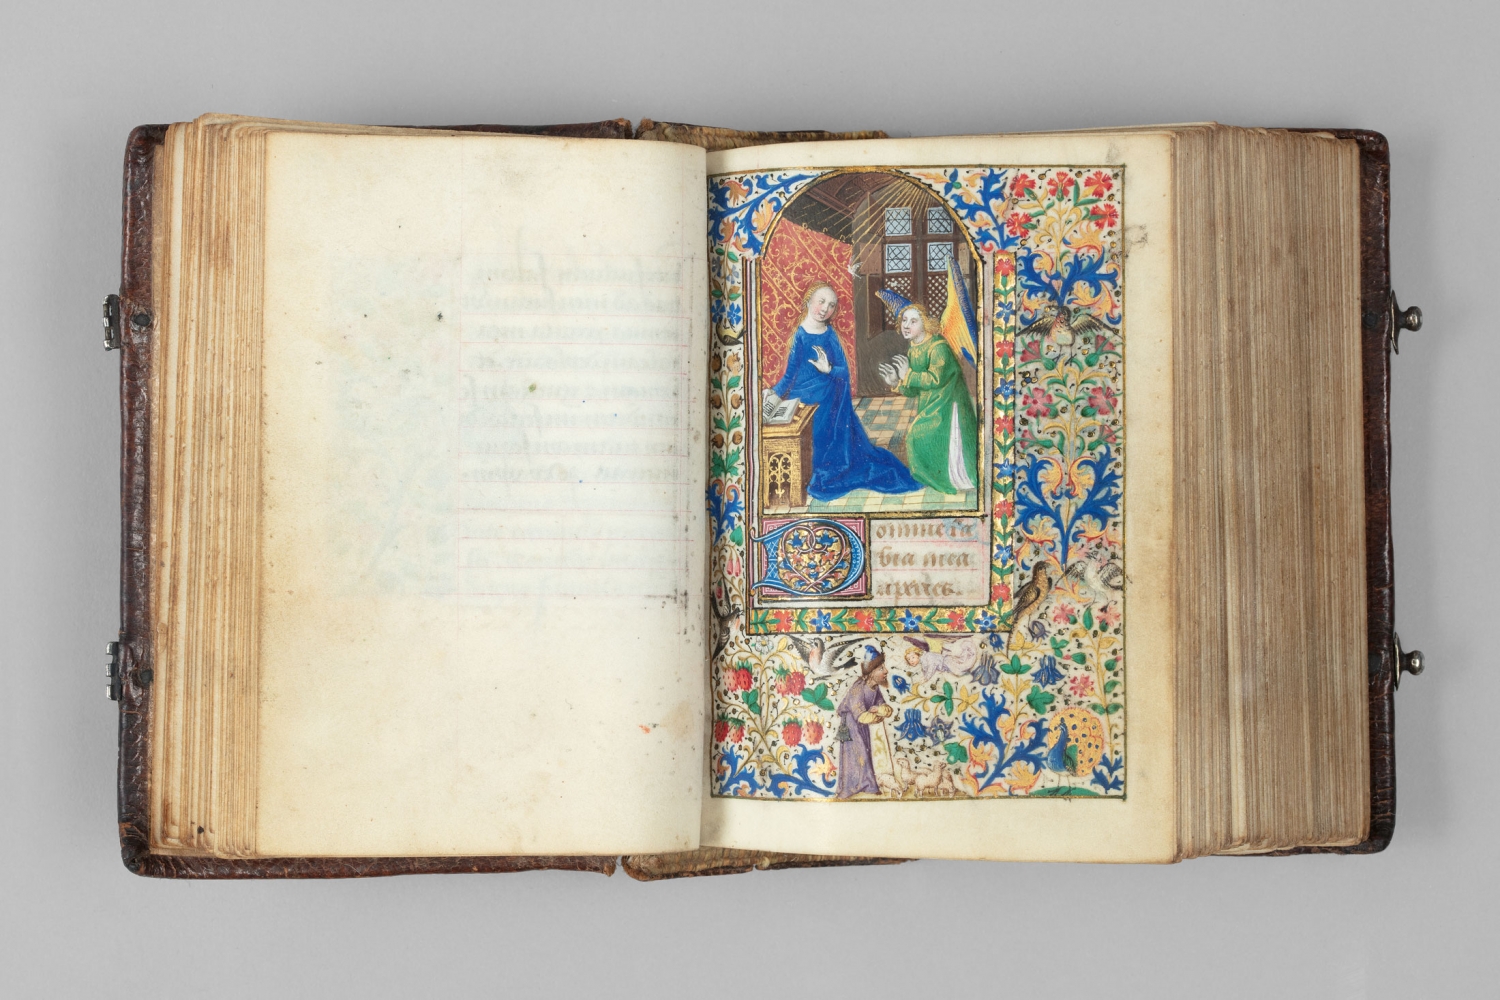 The Co&euml;tivy Master (Henri de Vulcop?) active c. 1450-1485